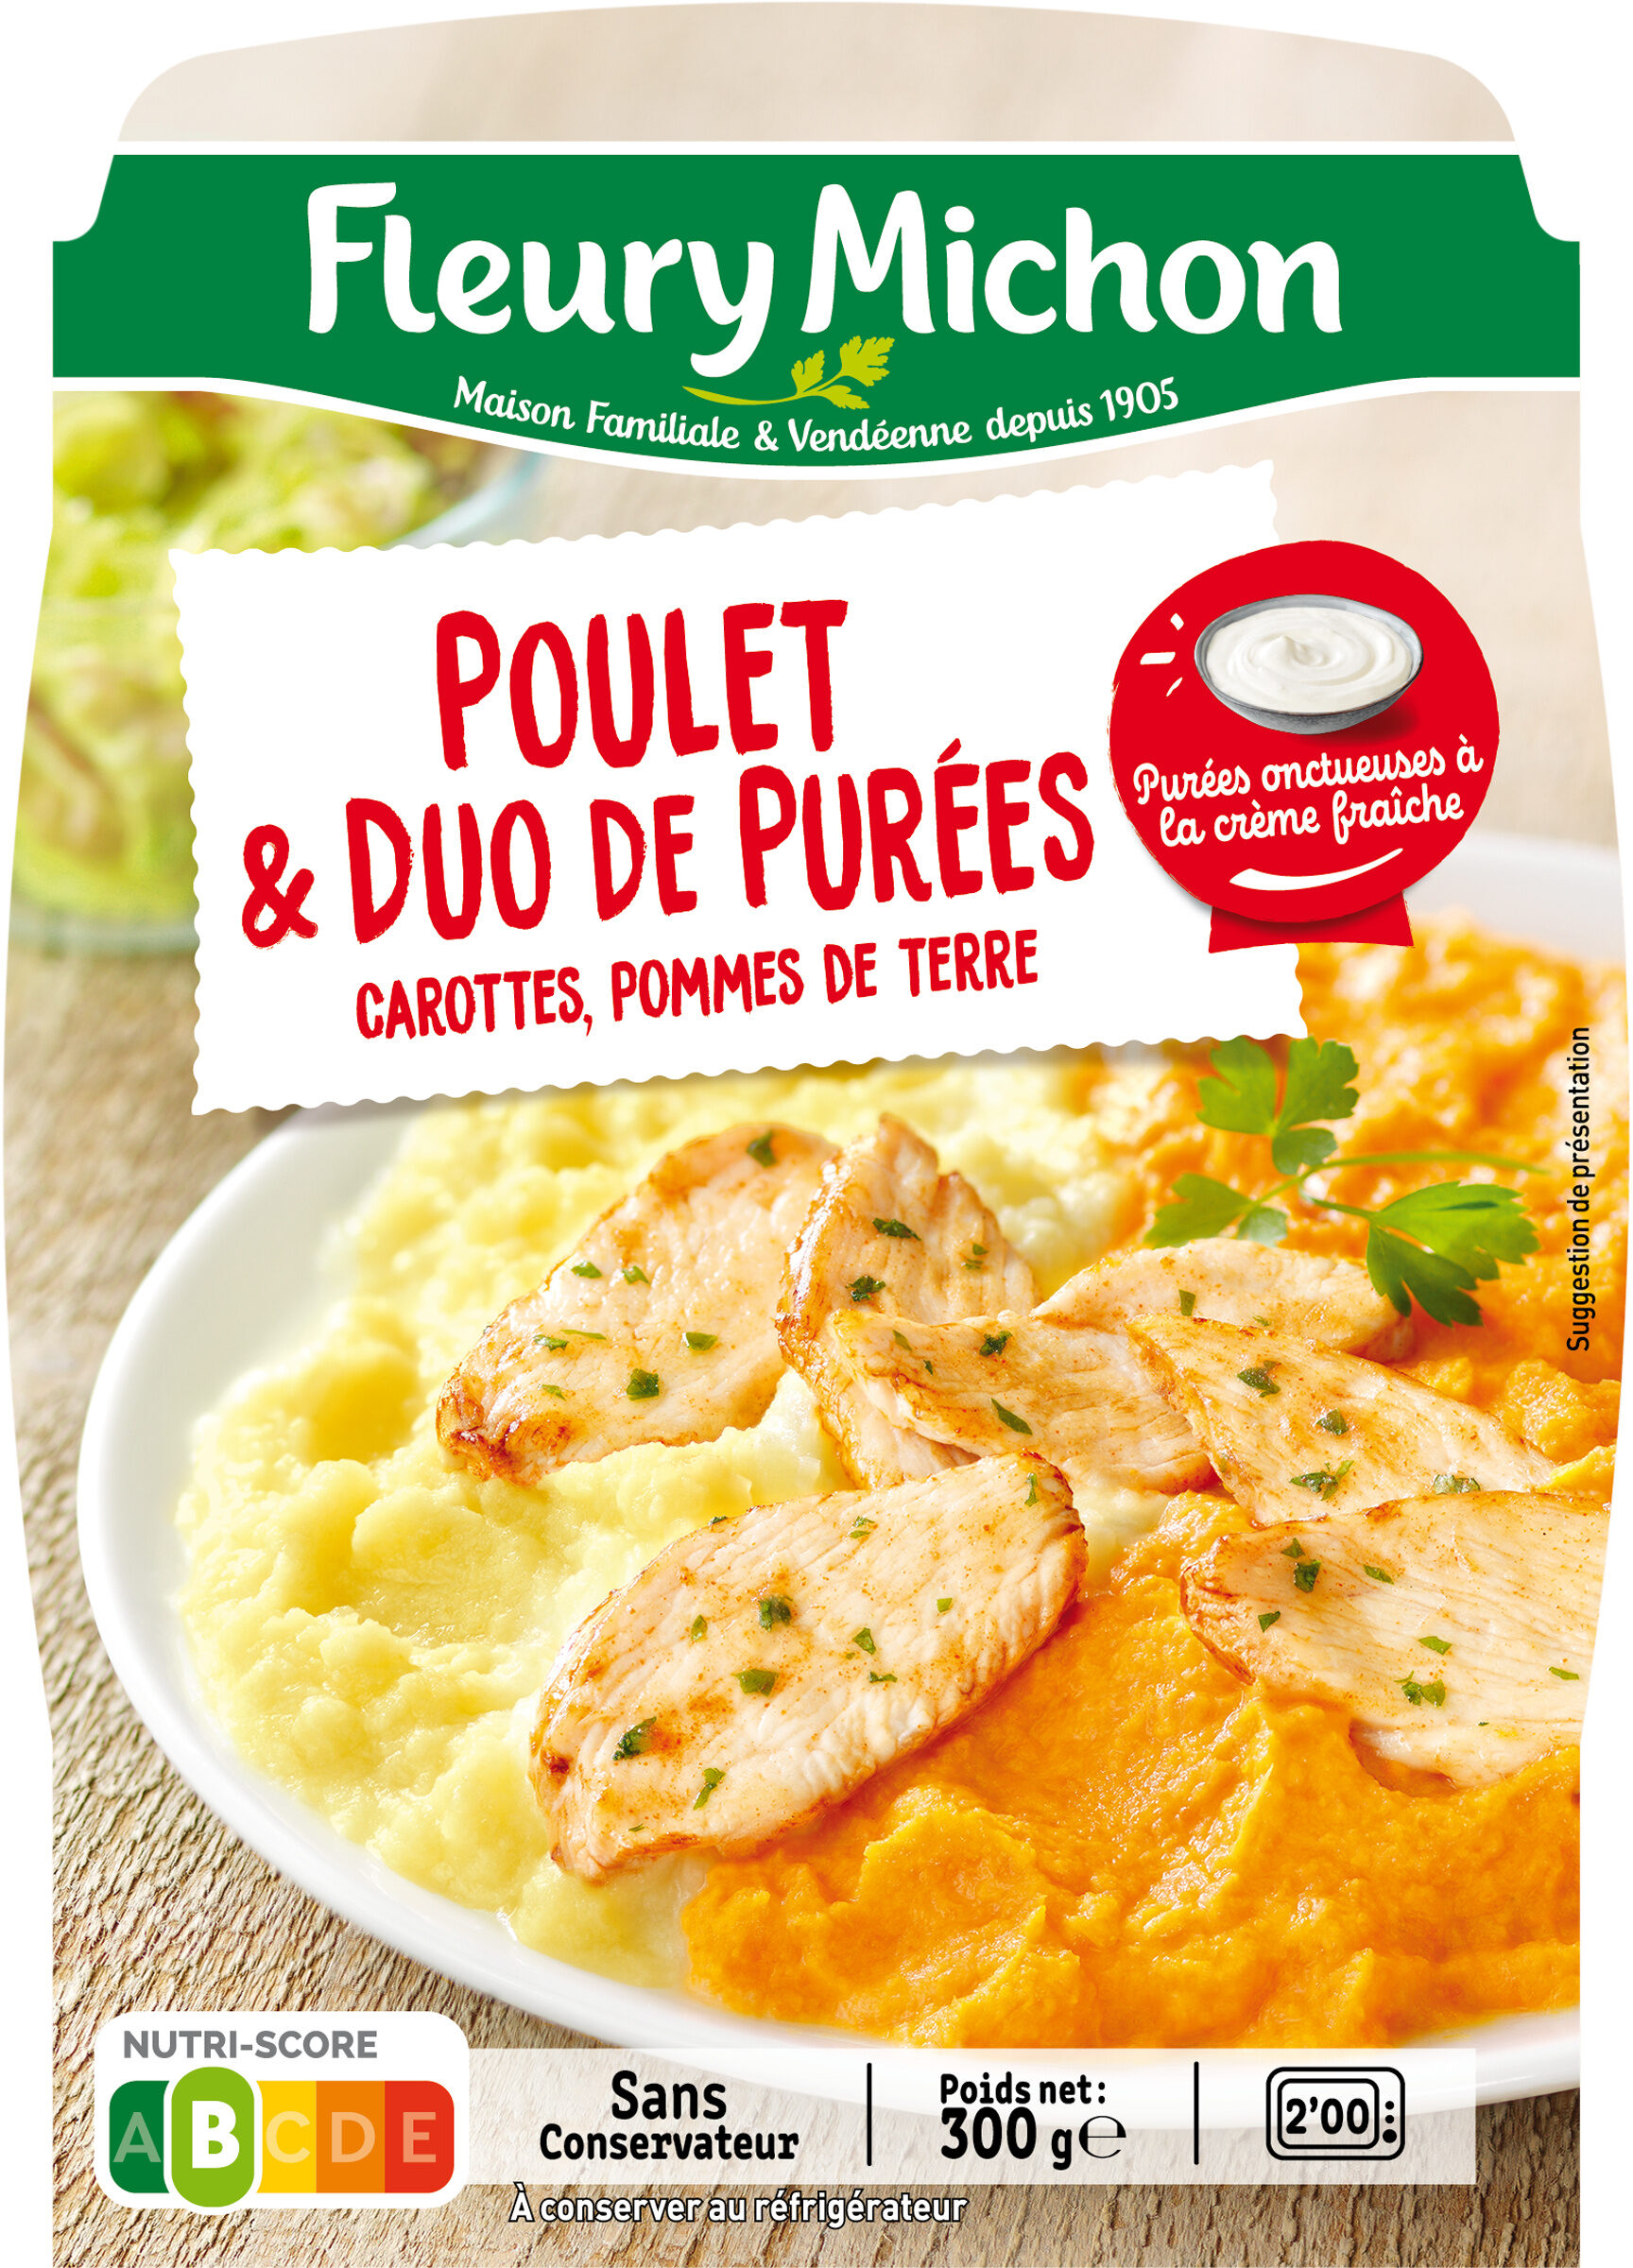 Poulet & duo de purées, carottes, pommes de terre - Producto - fr